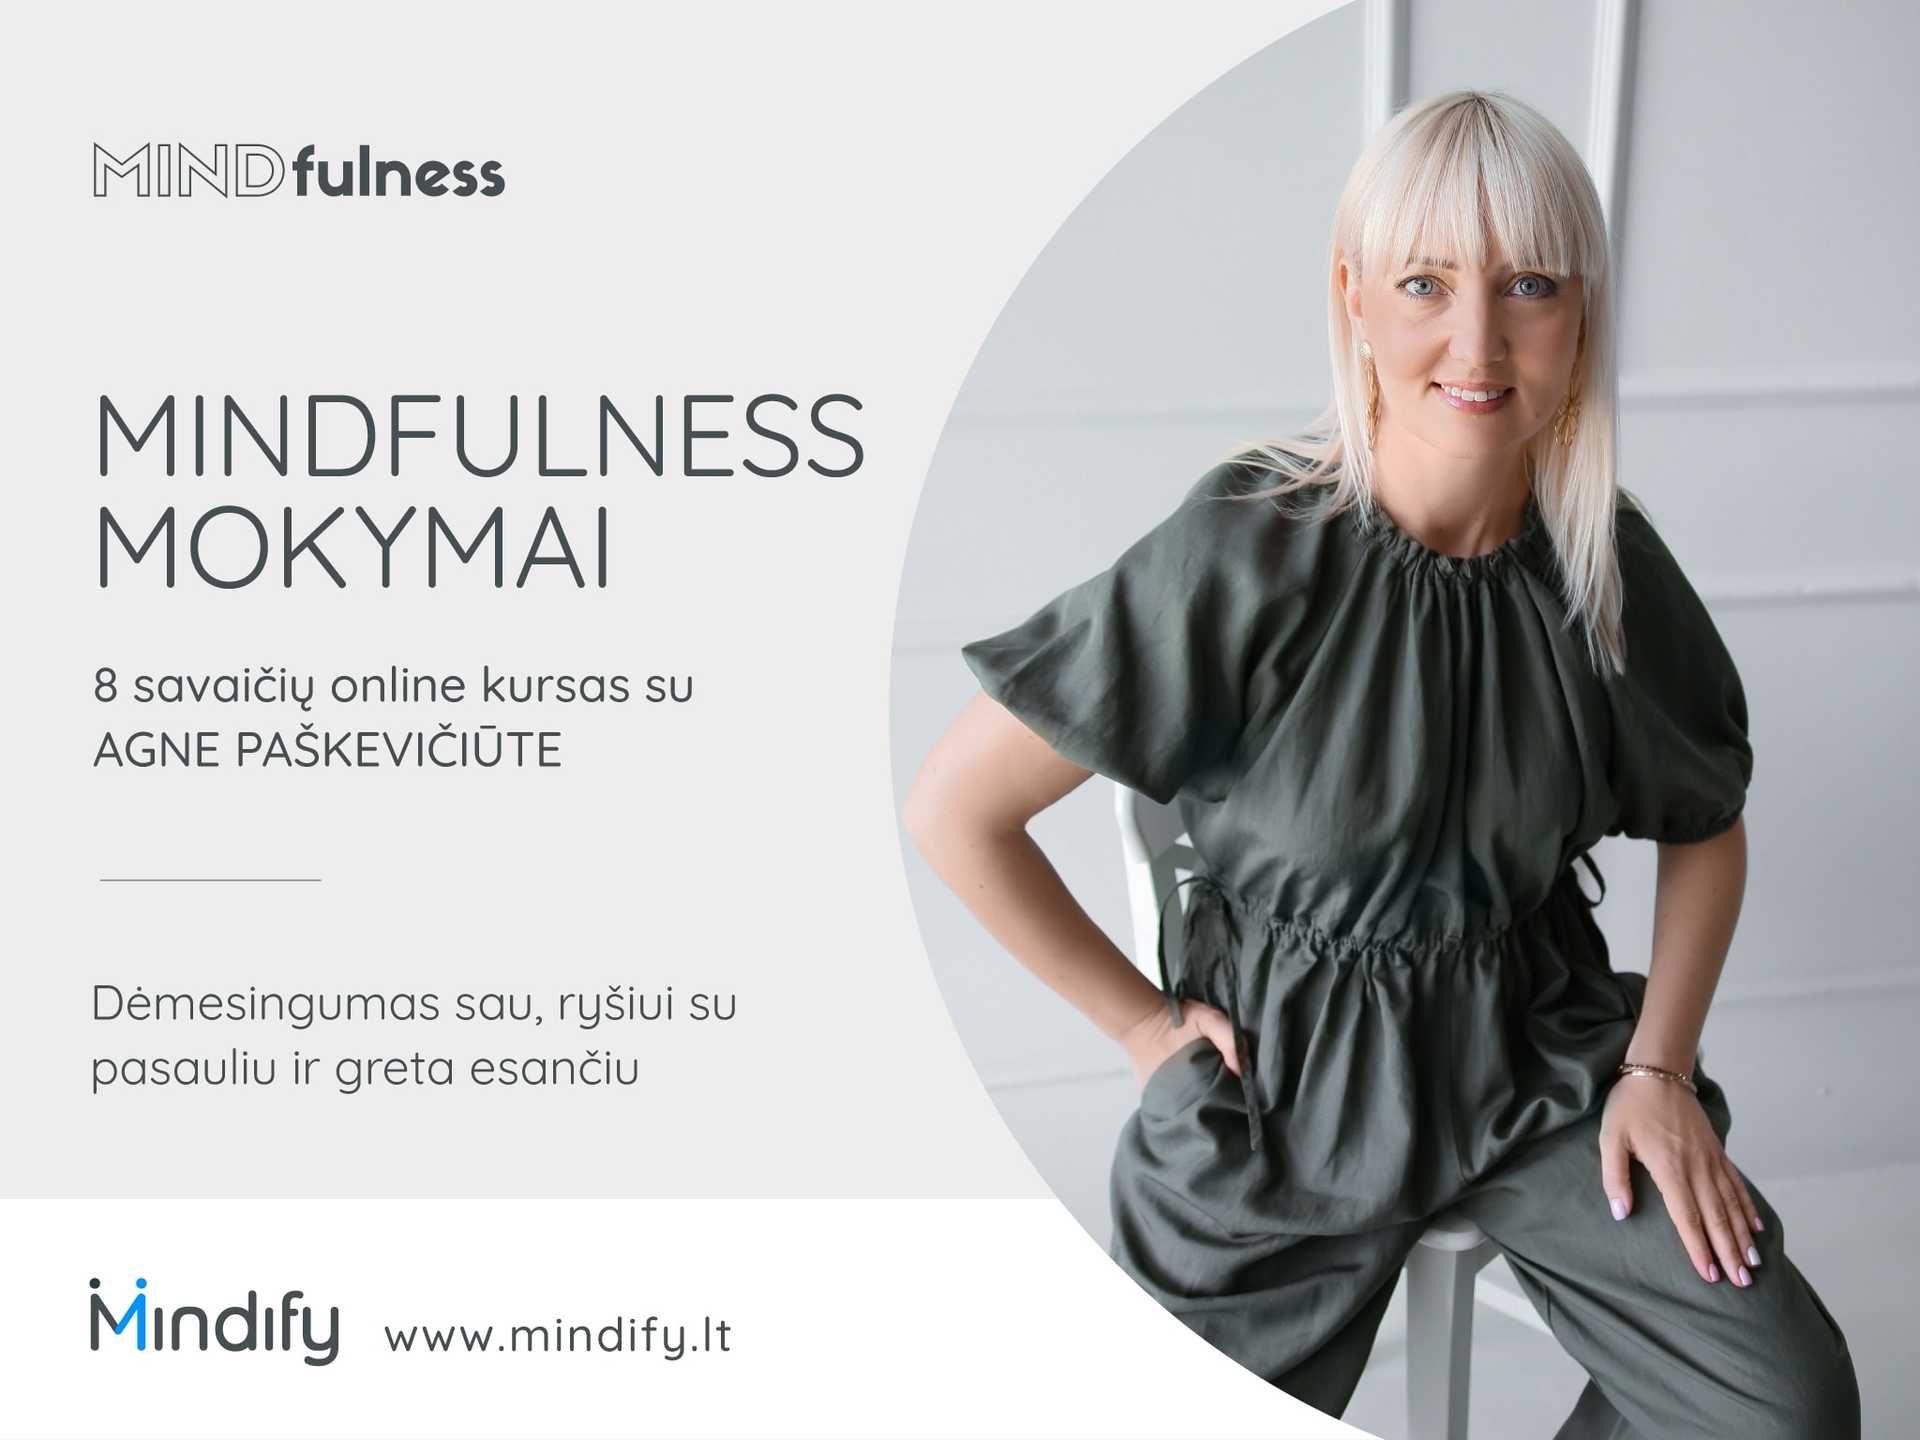 Mindfulness mokymai. 8 savaičių online kursas